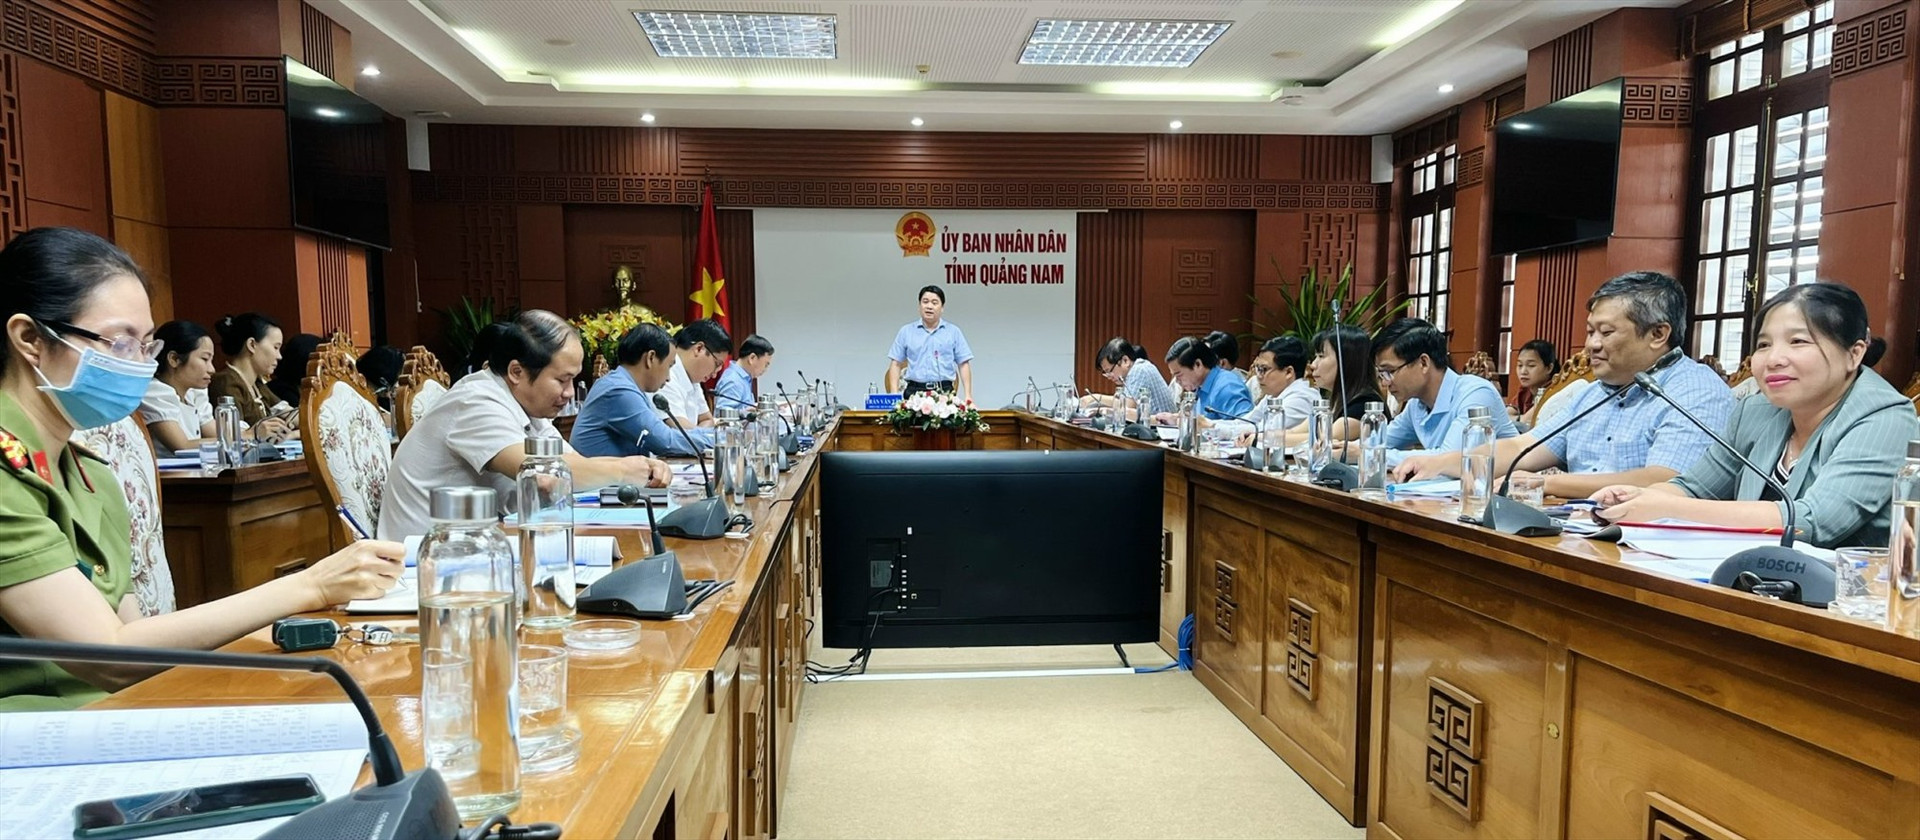 Phó Chủ tịch UBND tỉnh Trần Văn Tân chủ trì cuộc họp lấy ý kiến đóng góp về 2 đề án liên quan đến du lịch, văn hóa. Ảnh: X.H